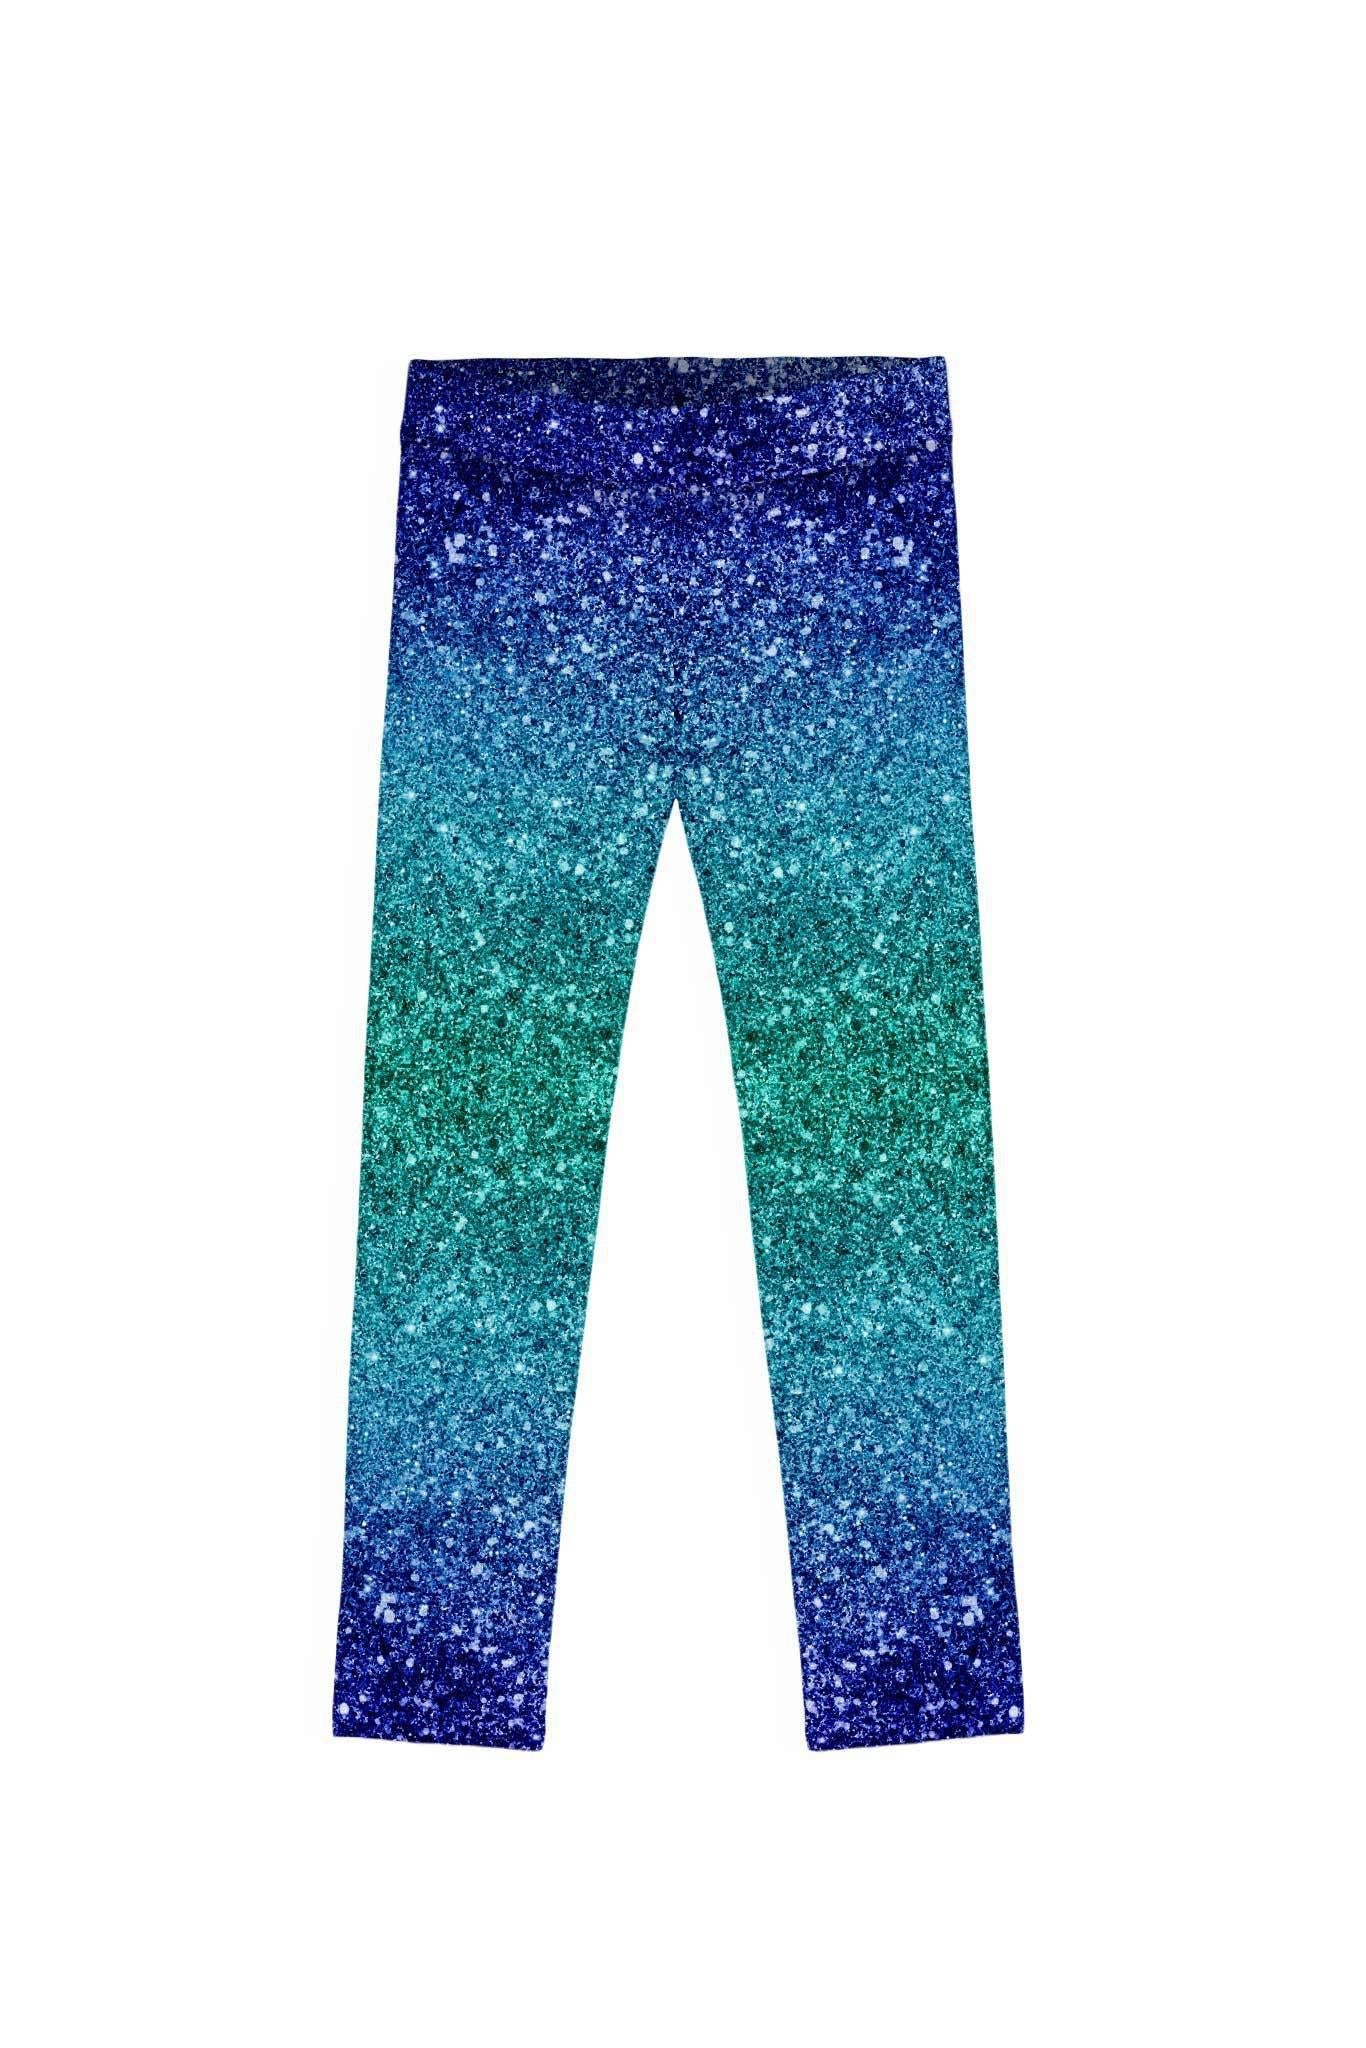 3 for $49! Ocean Drive Lucy Blue Glitter Print Leggings - Kids - Pineapple Clothing